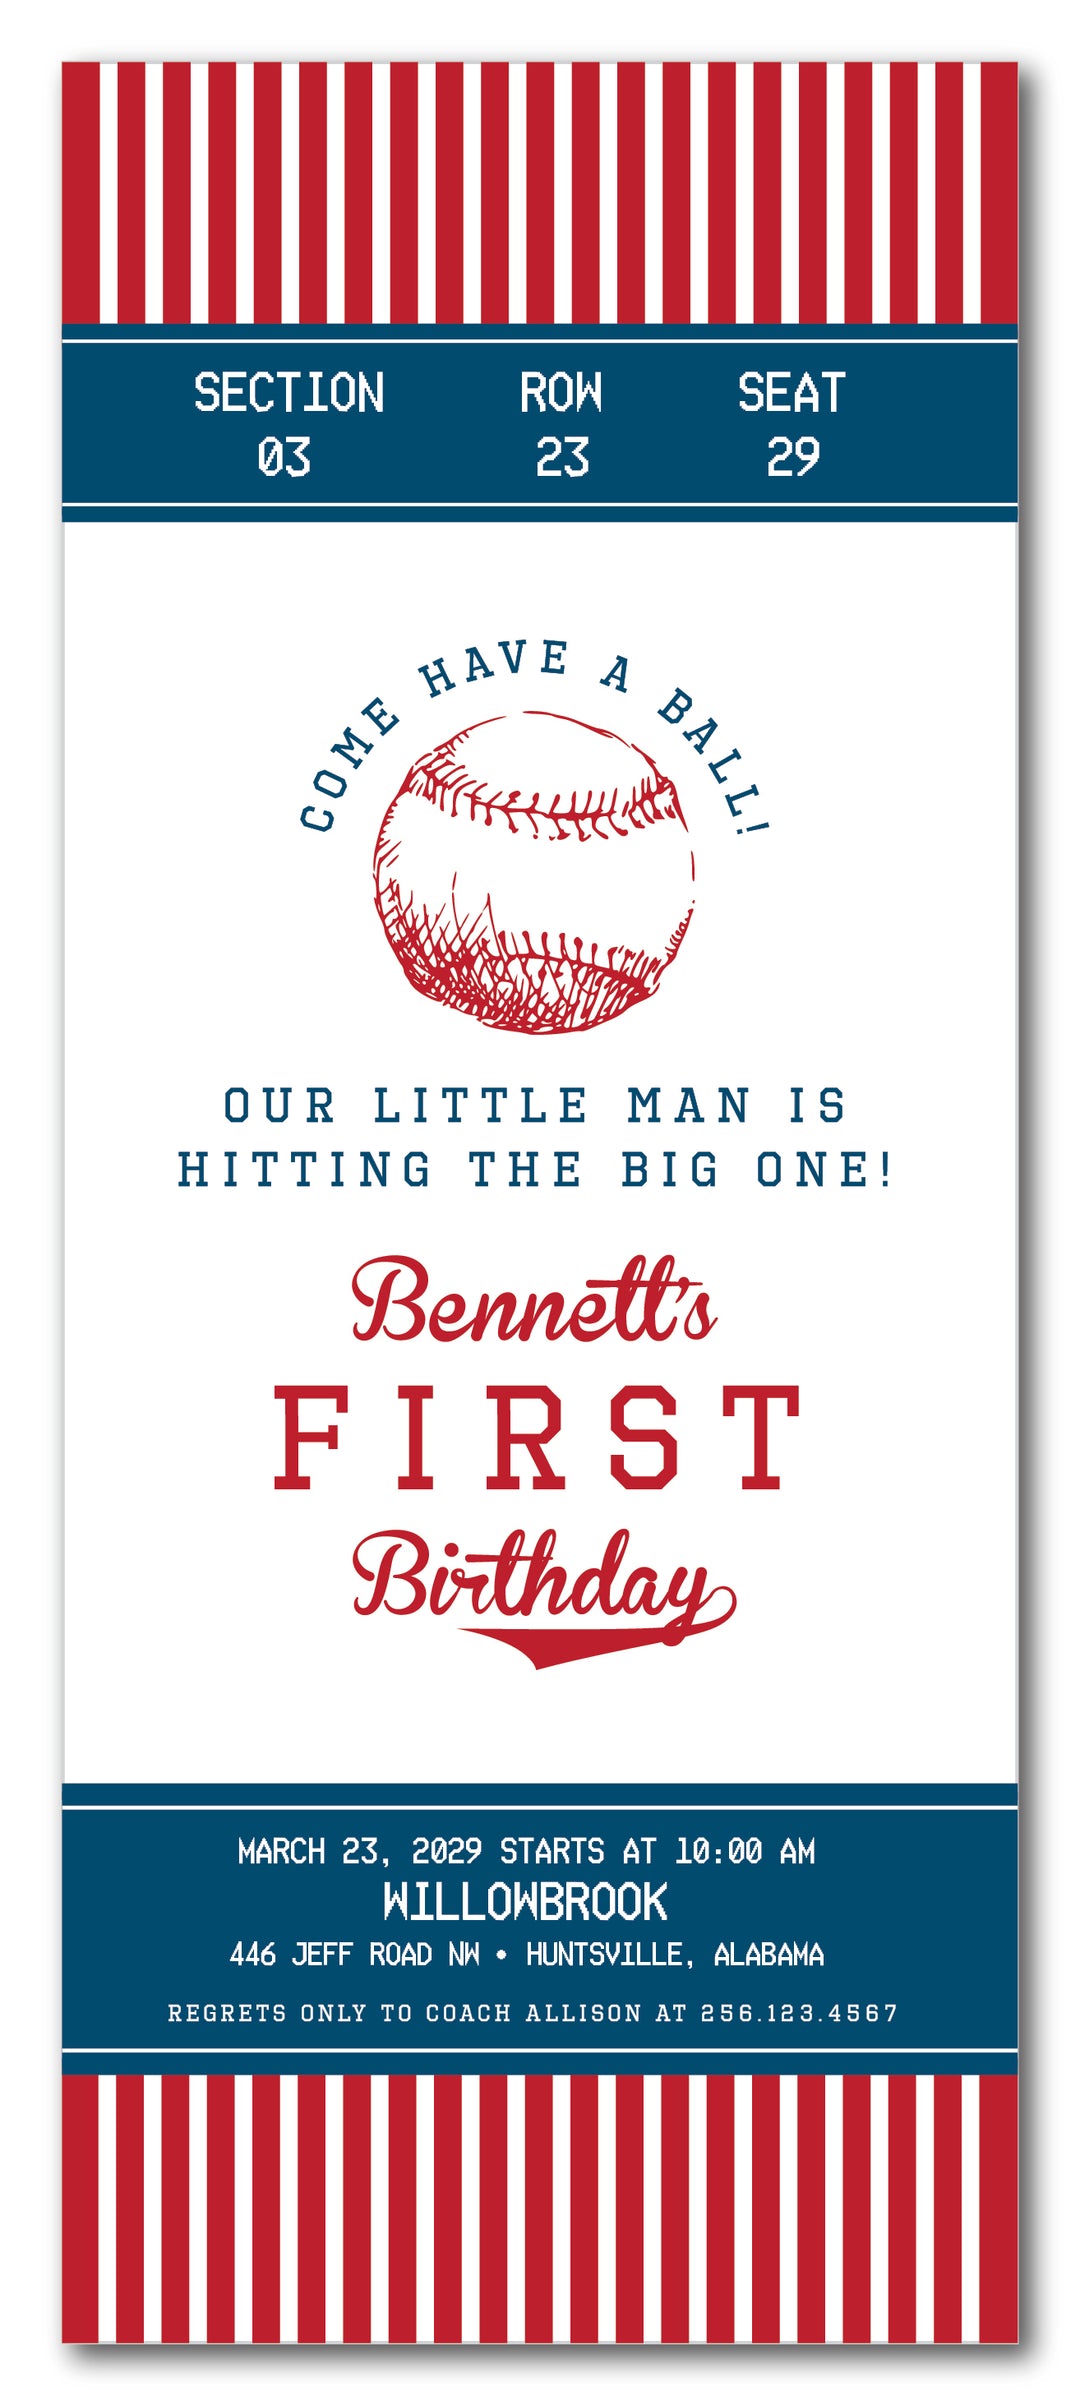 The Baseball III Birthday Party Invitation